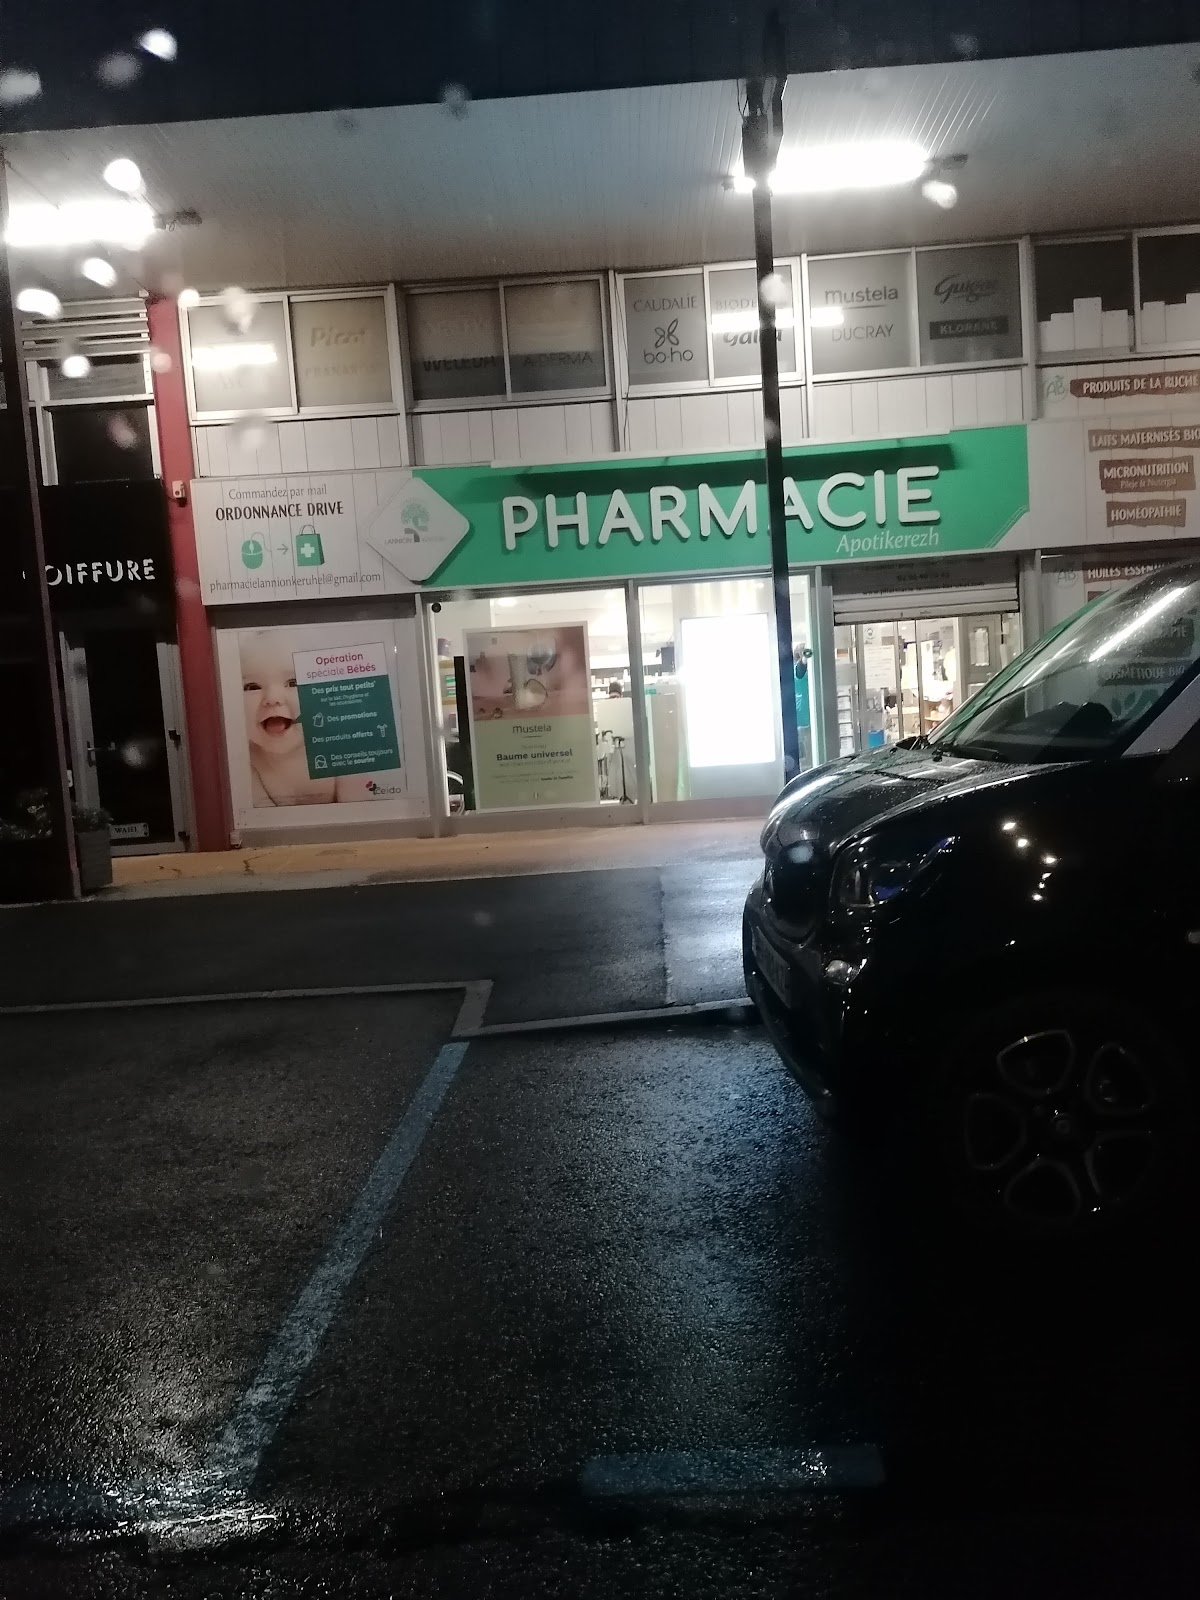 Pharmacie Thibaut Moalic